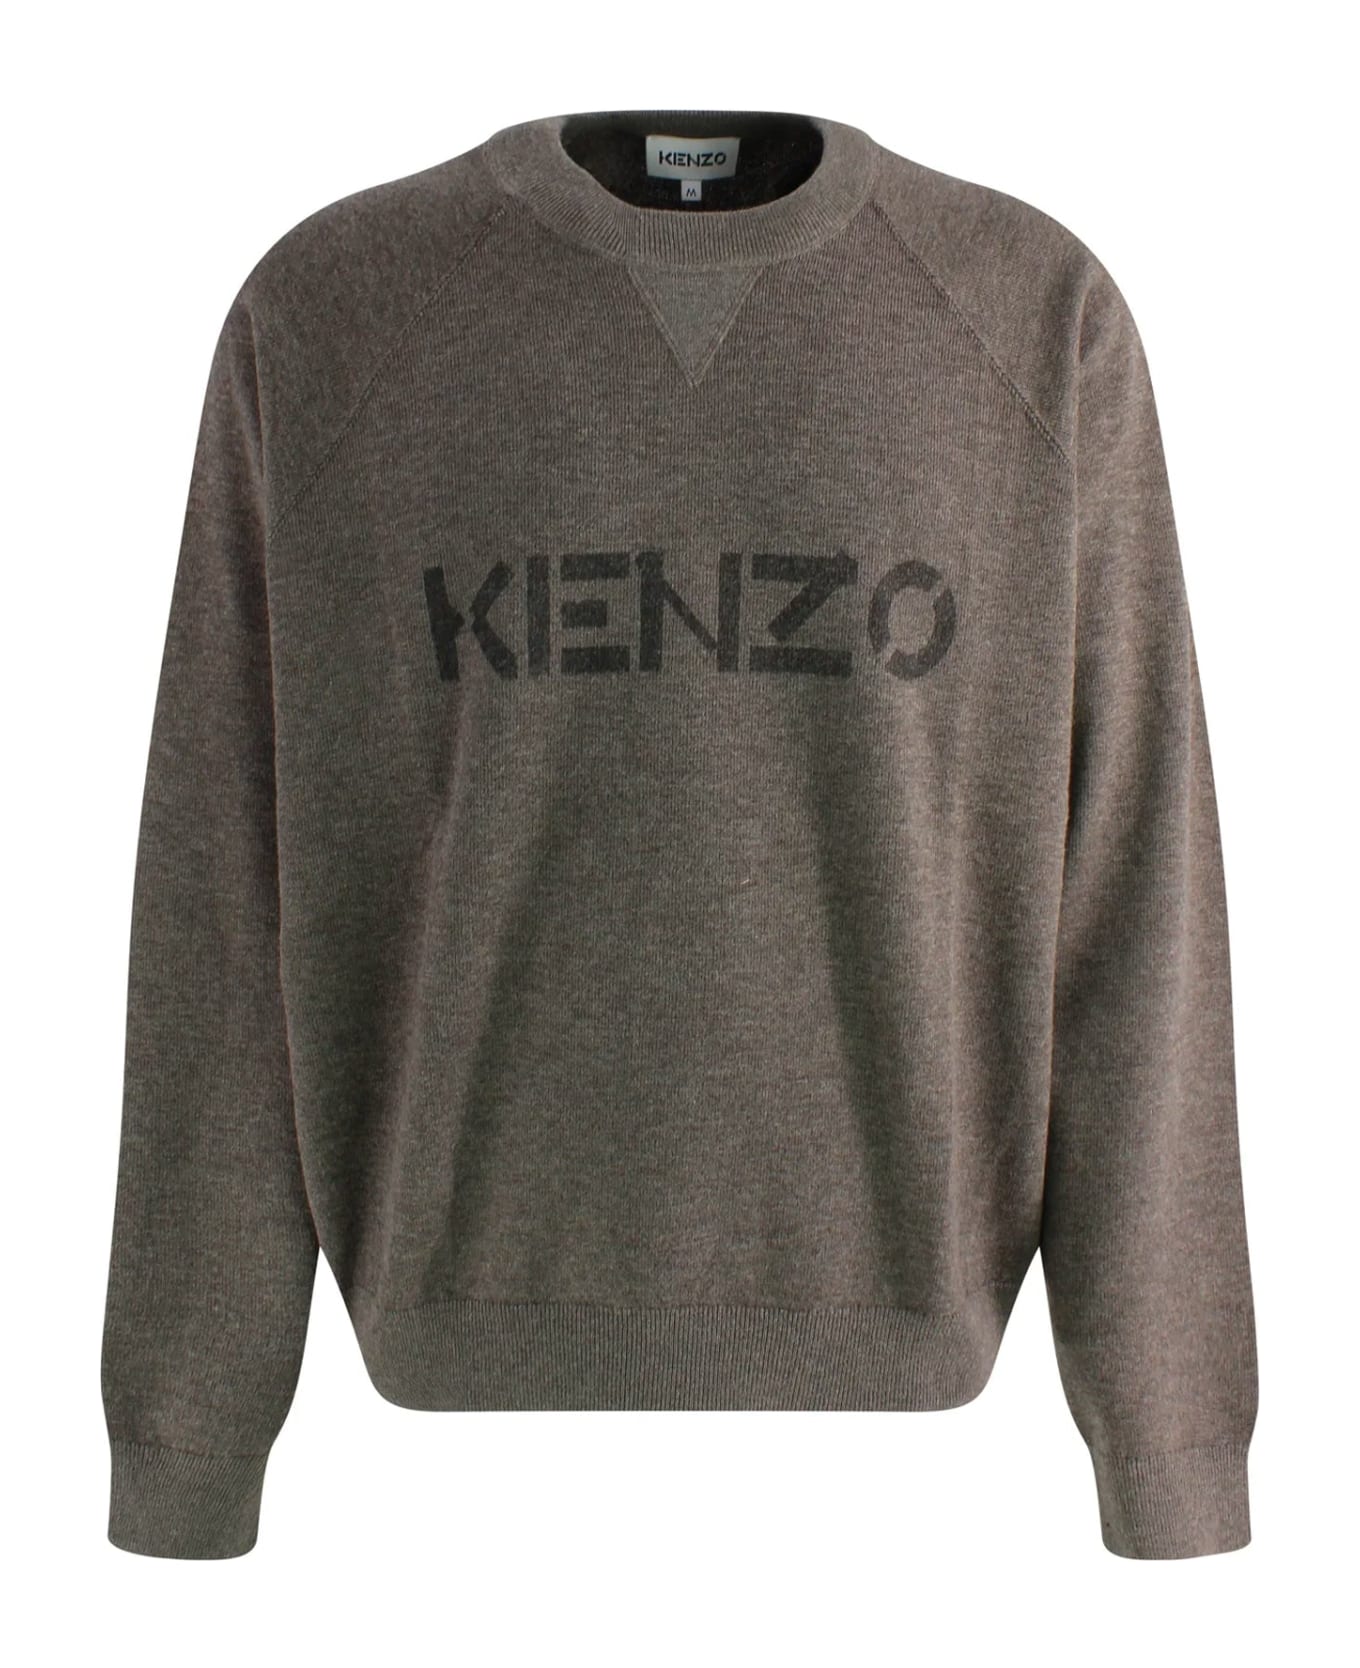 Kenzo Logo Sweater - Brown